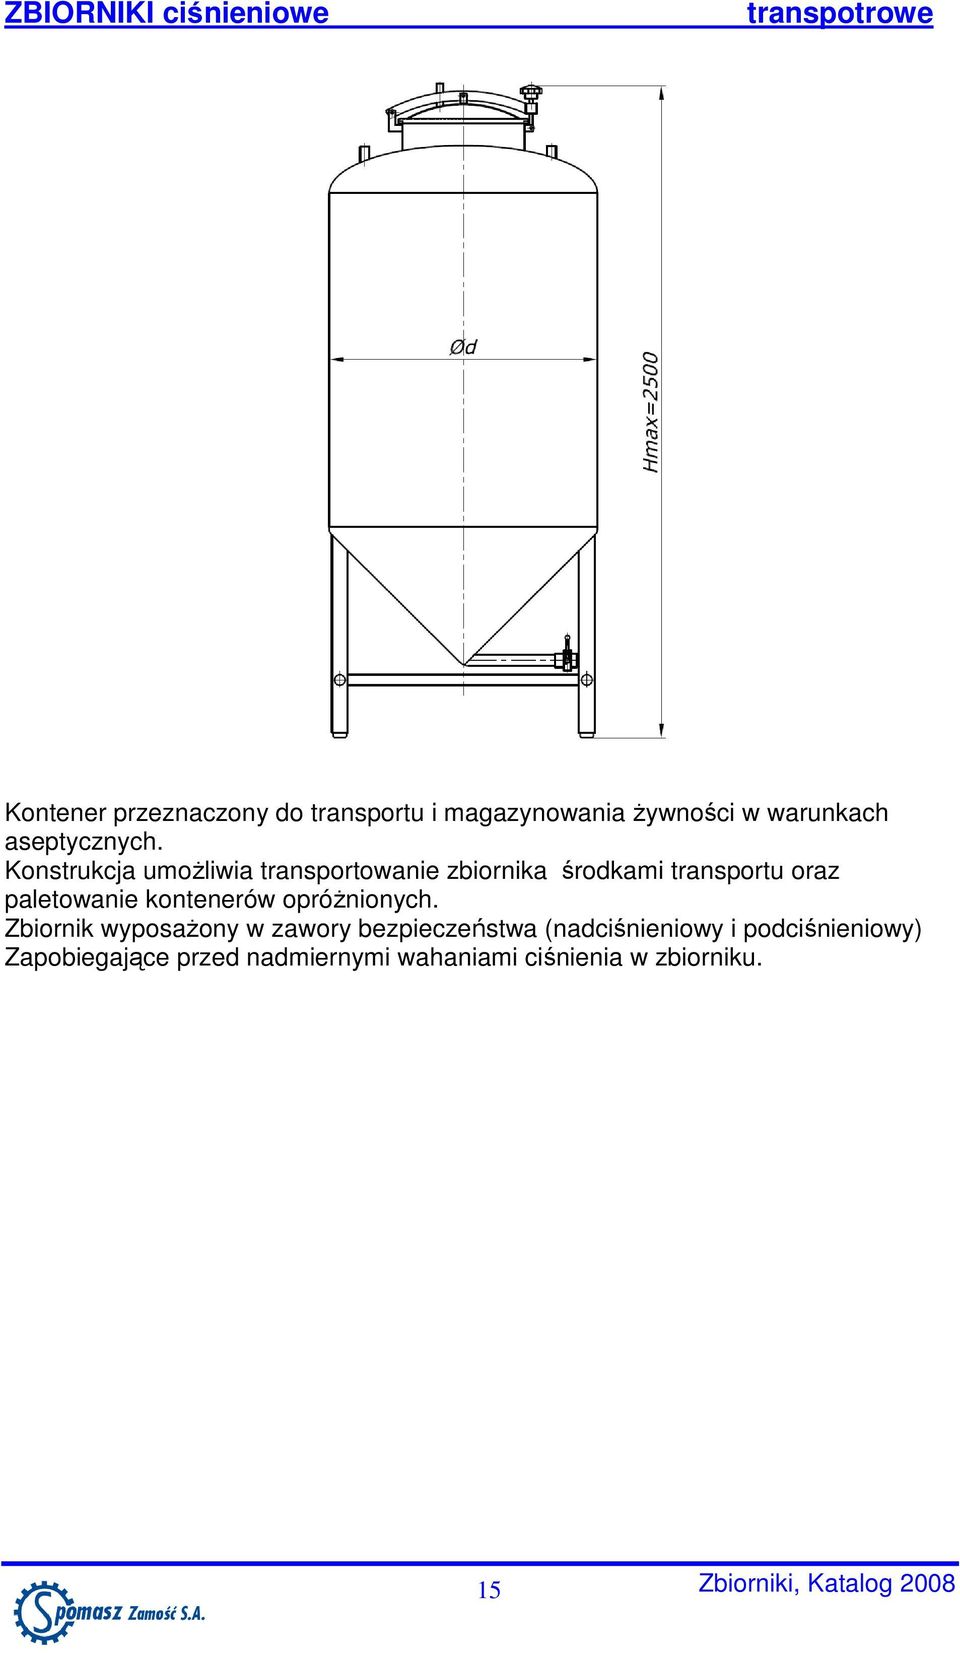 Konstrukcja umoŝliwia transportowanie zbiornika środkami transportu oraz paletowanie